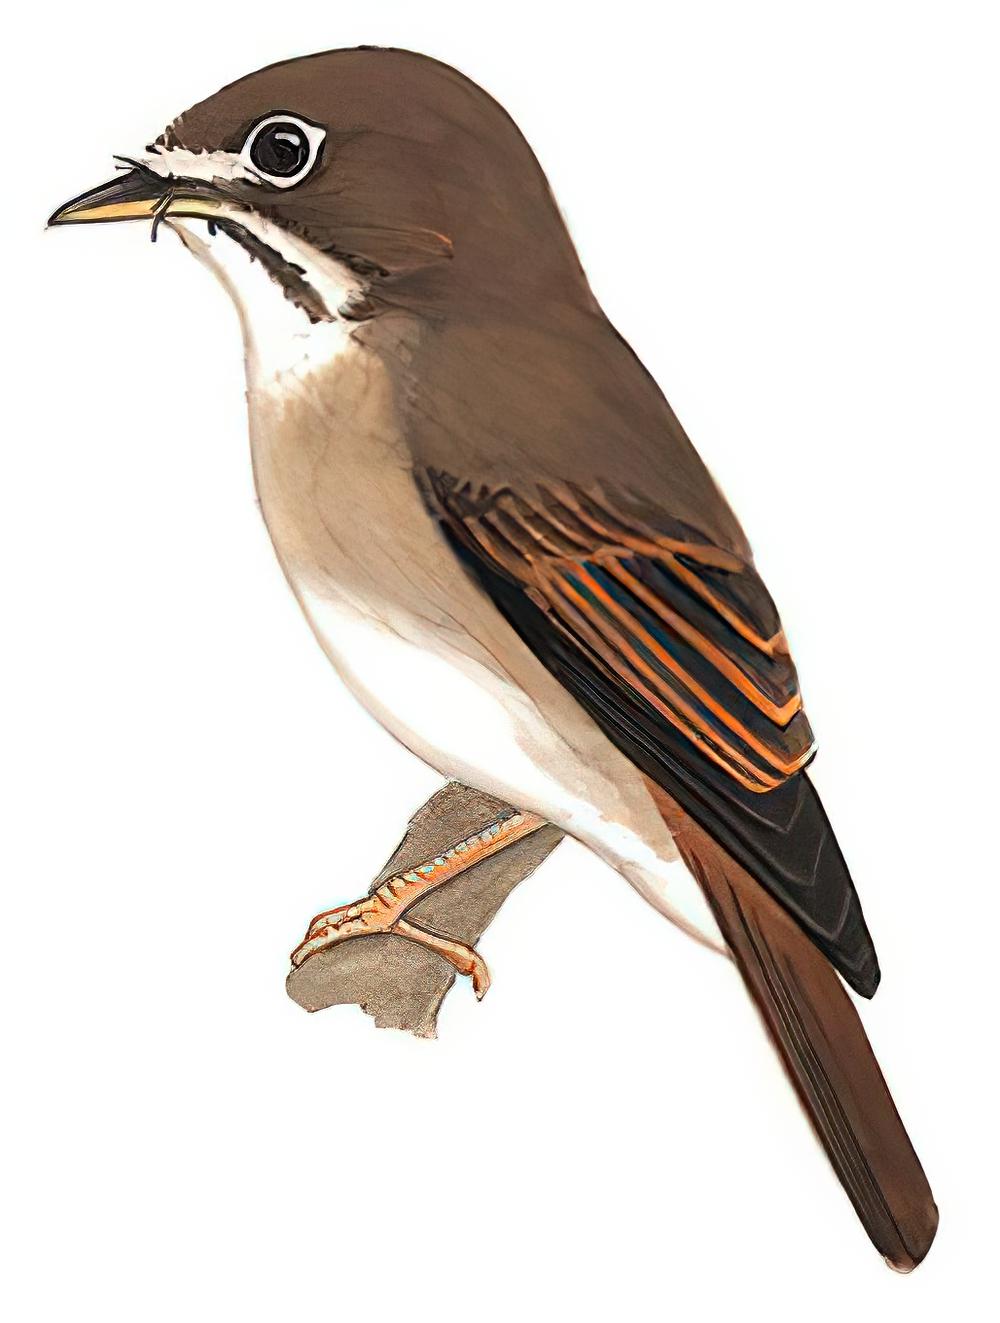 褐胸鹟 / Brown-breasted Flycatcher / Muscicapa muttui